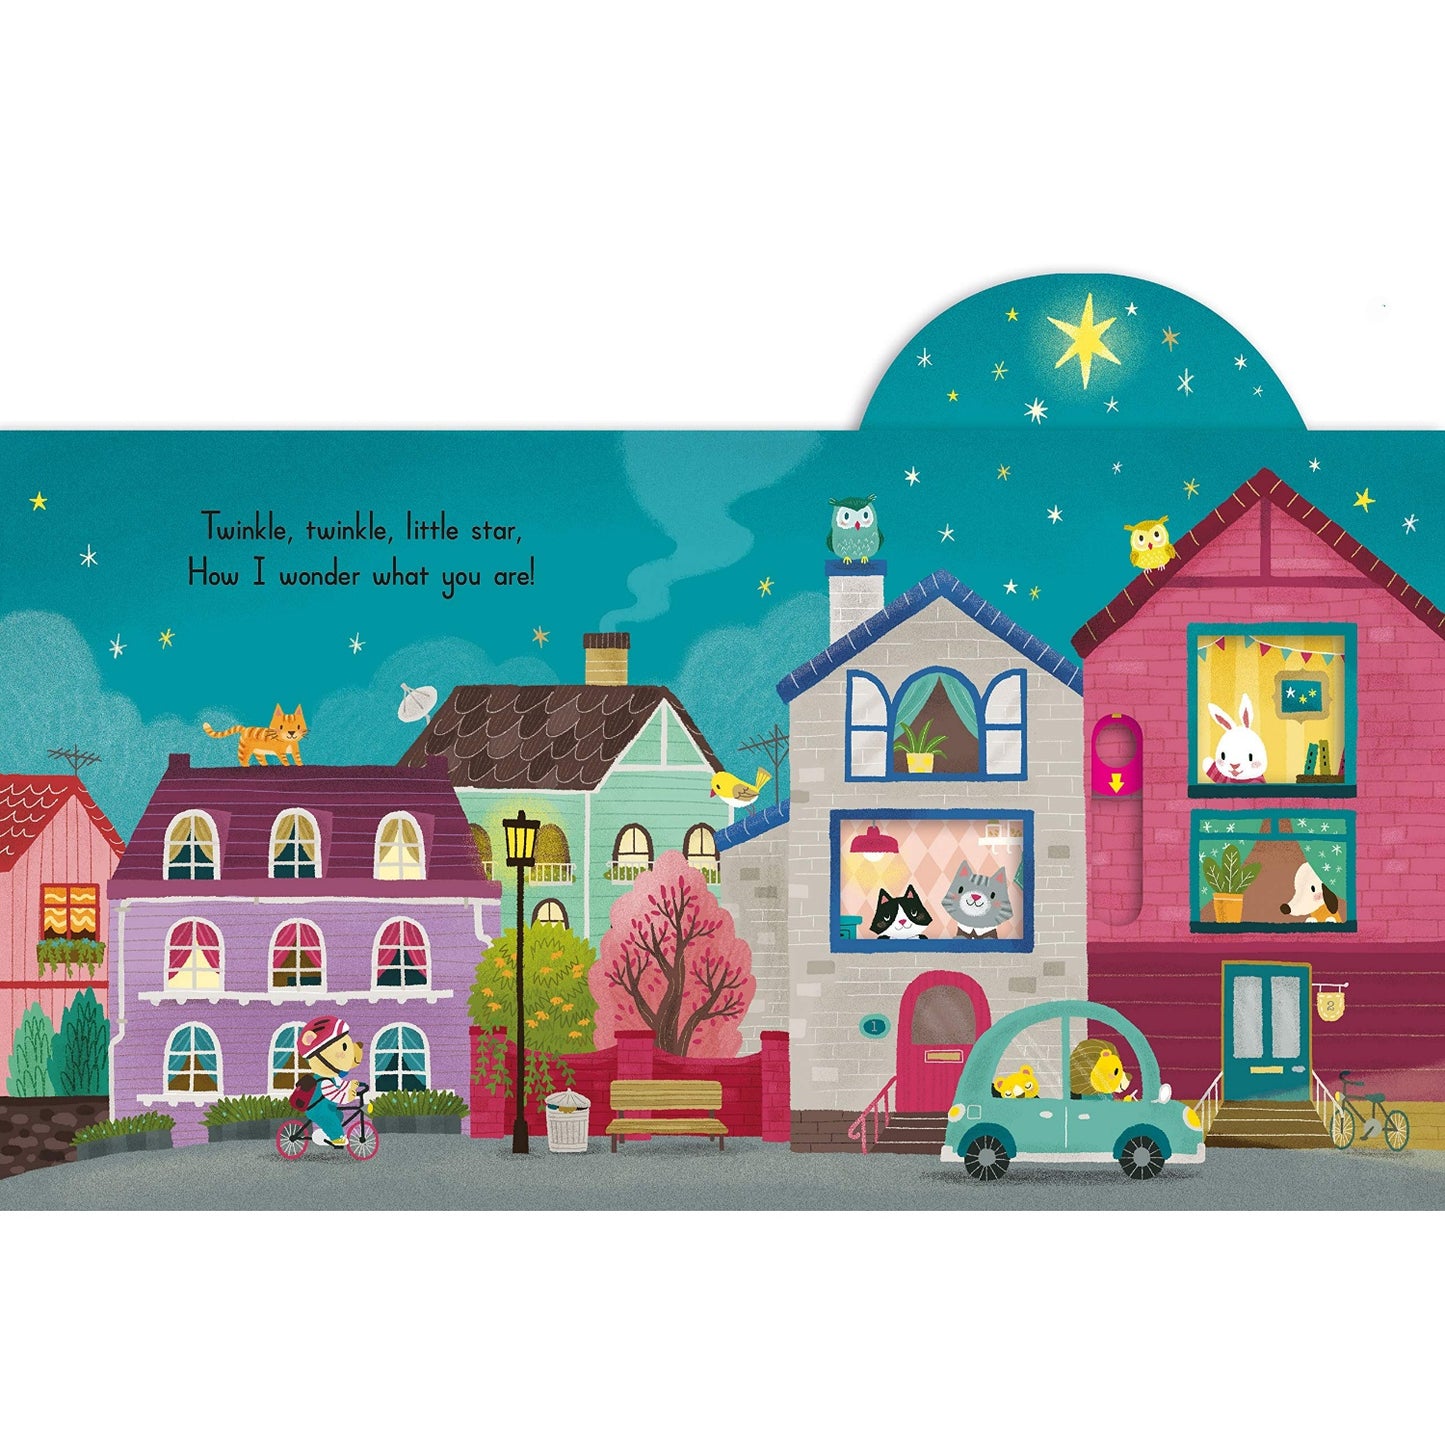 Twinkle Twinkle Little Star - Sing Along With Me! | Board Book